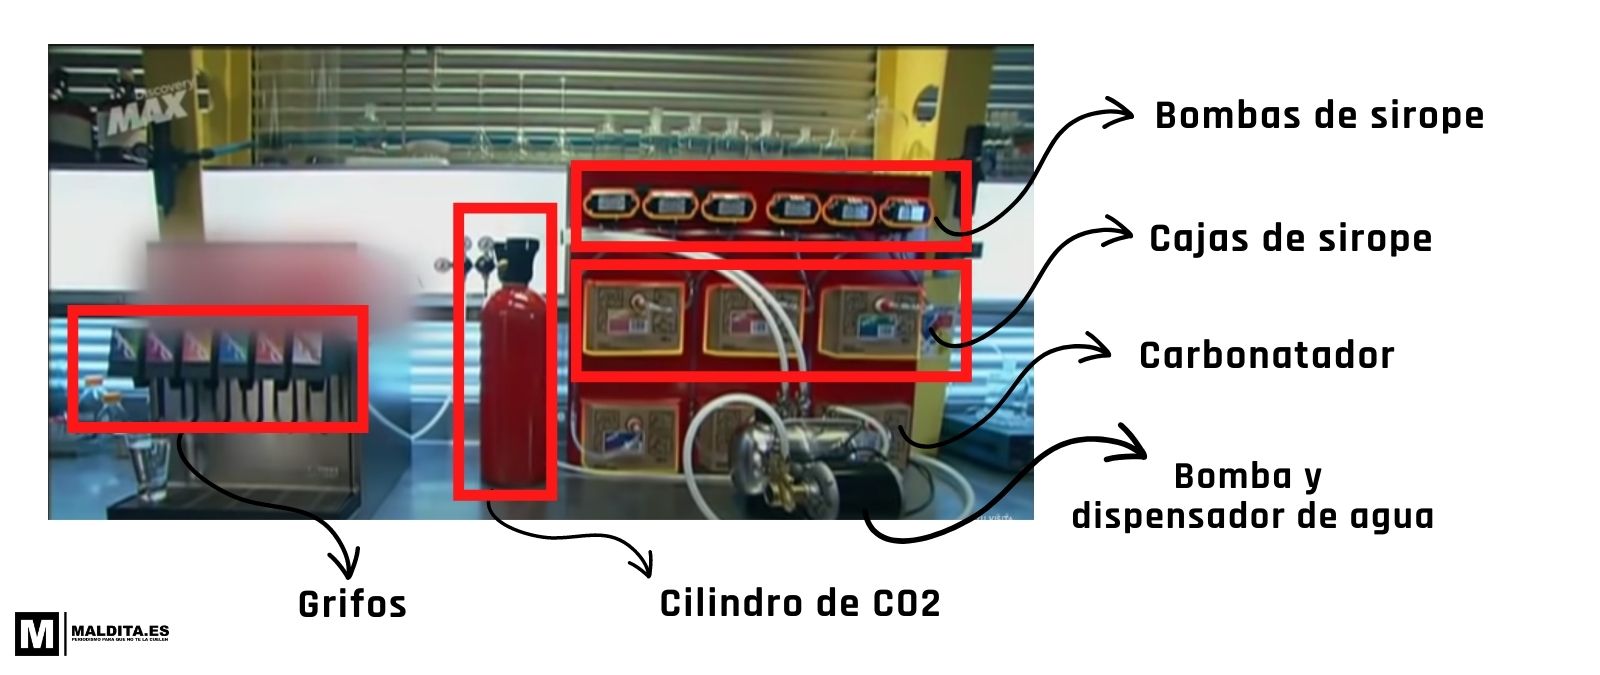 El carbonatador, un dispensador de agua con gas